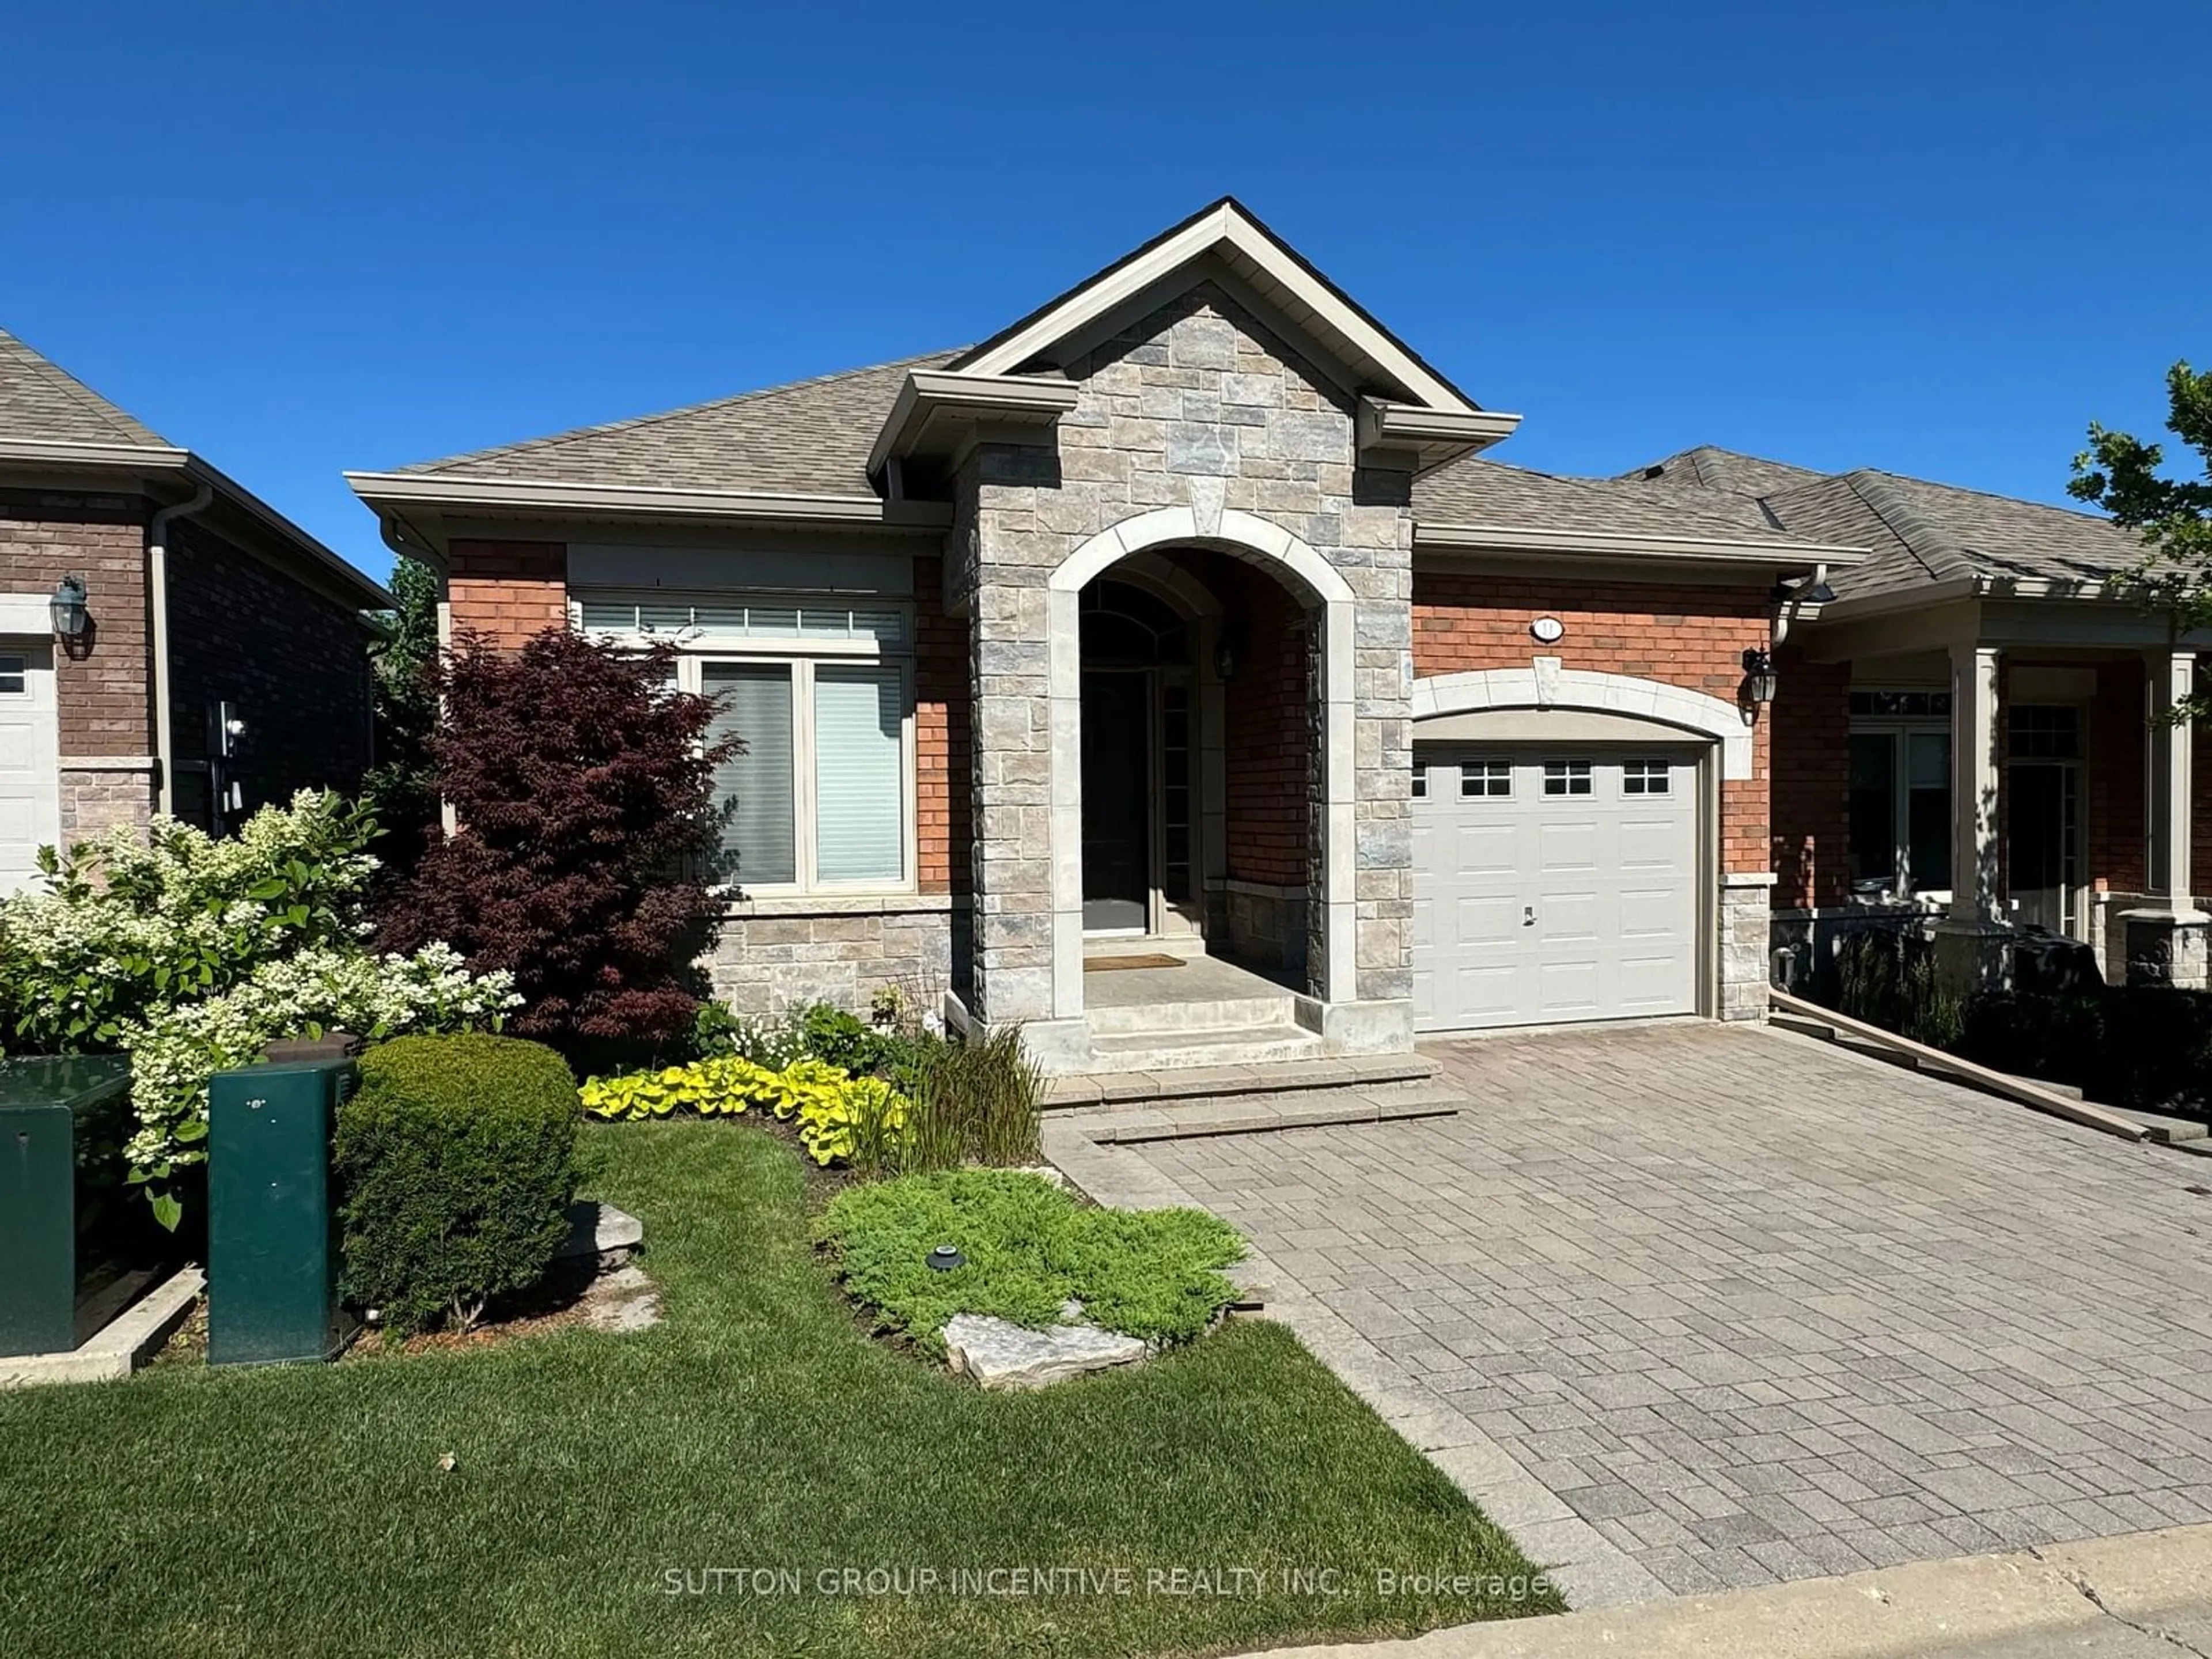 Home with brick exterior material for 11 Vista Gdns #14, New Tecumseth Ontario L9R 0H3